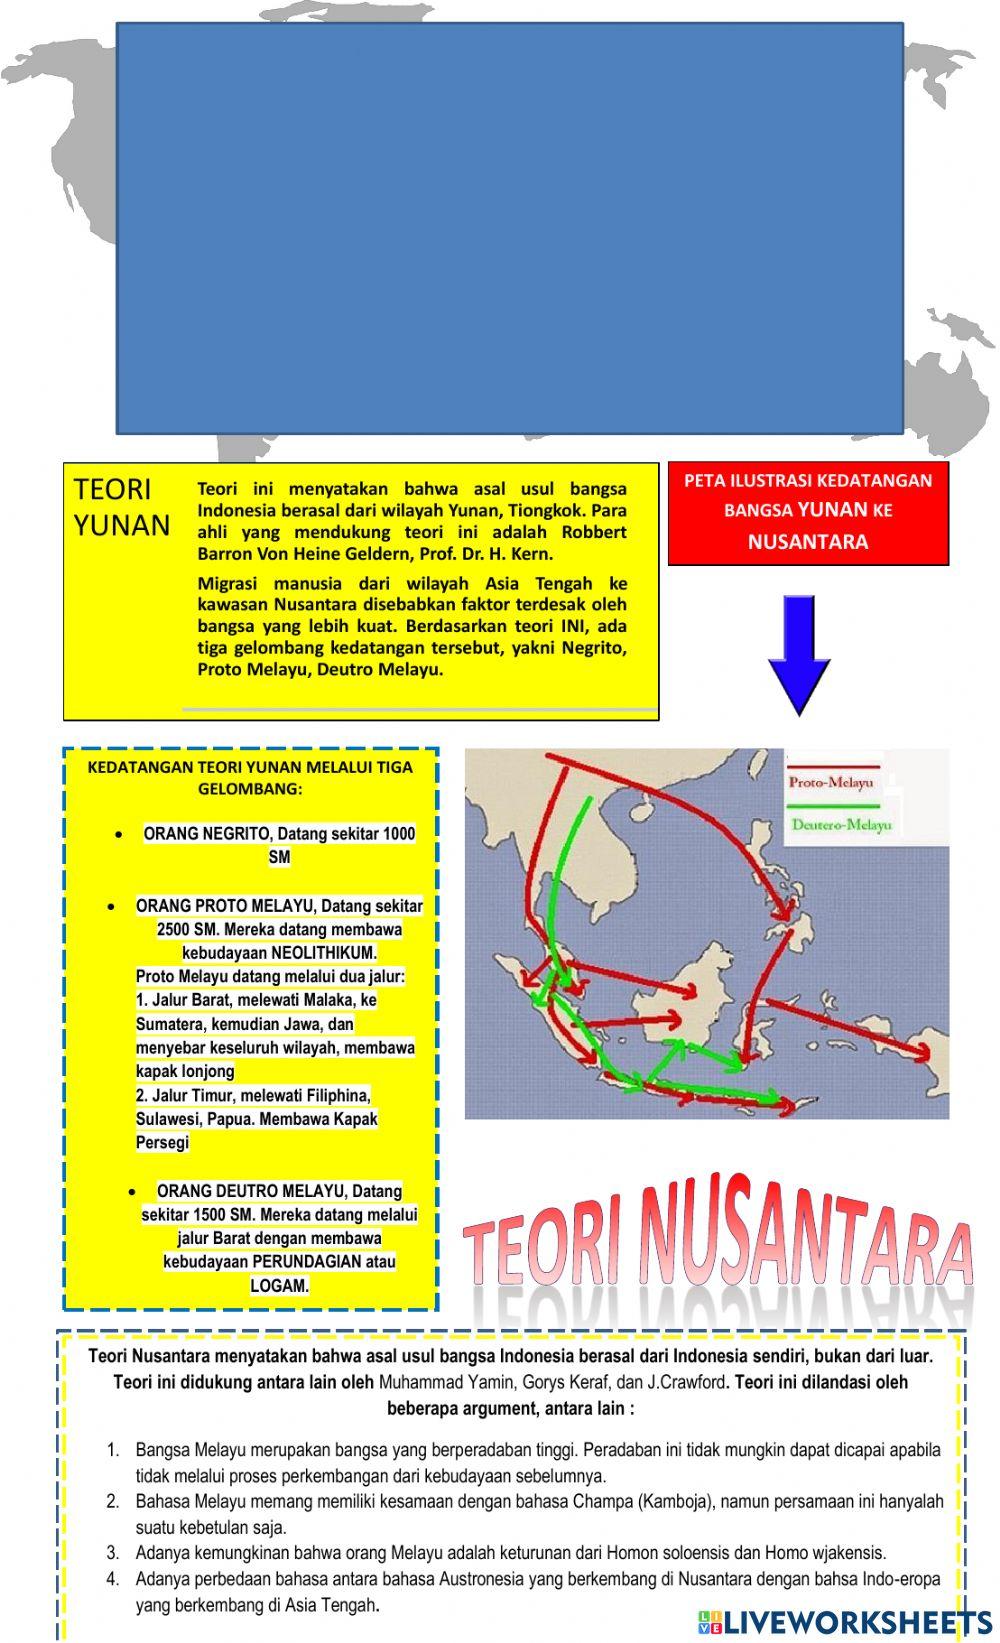 Asal usul nenek moyang bangsa indonesia